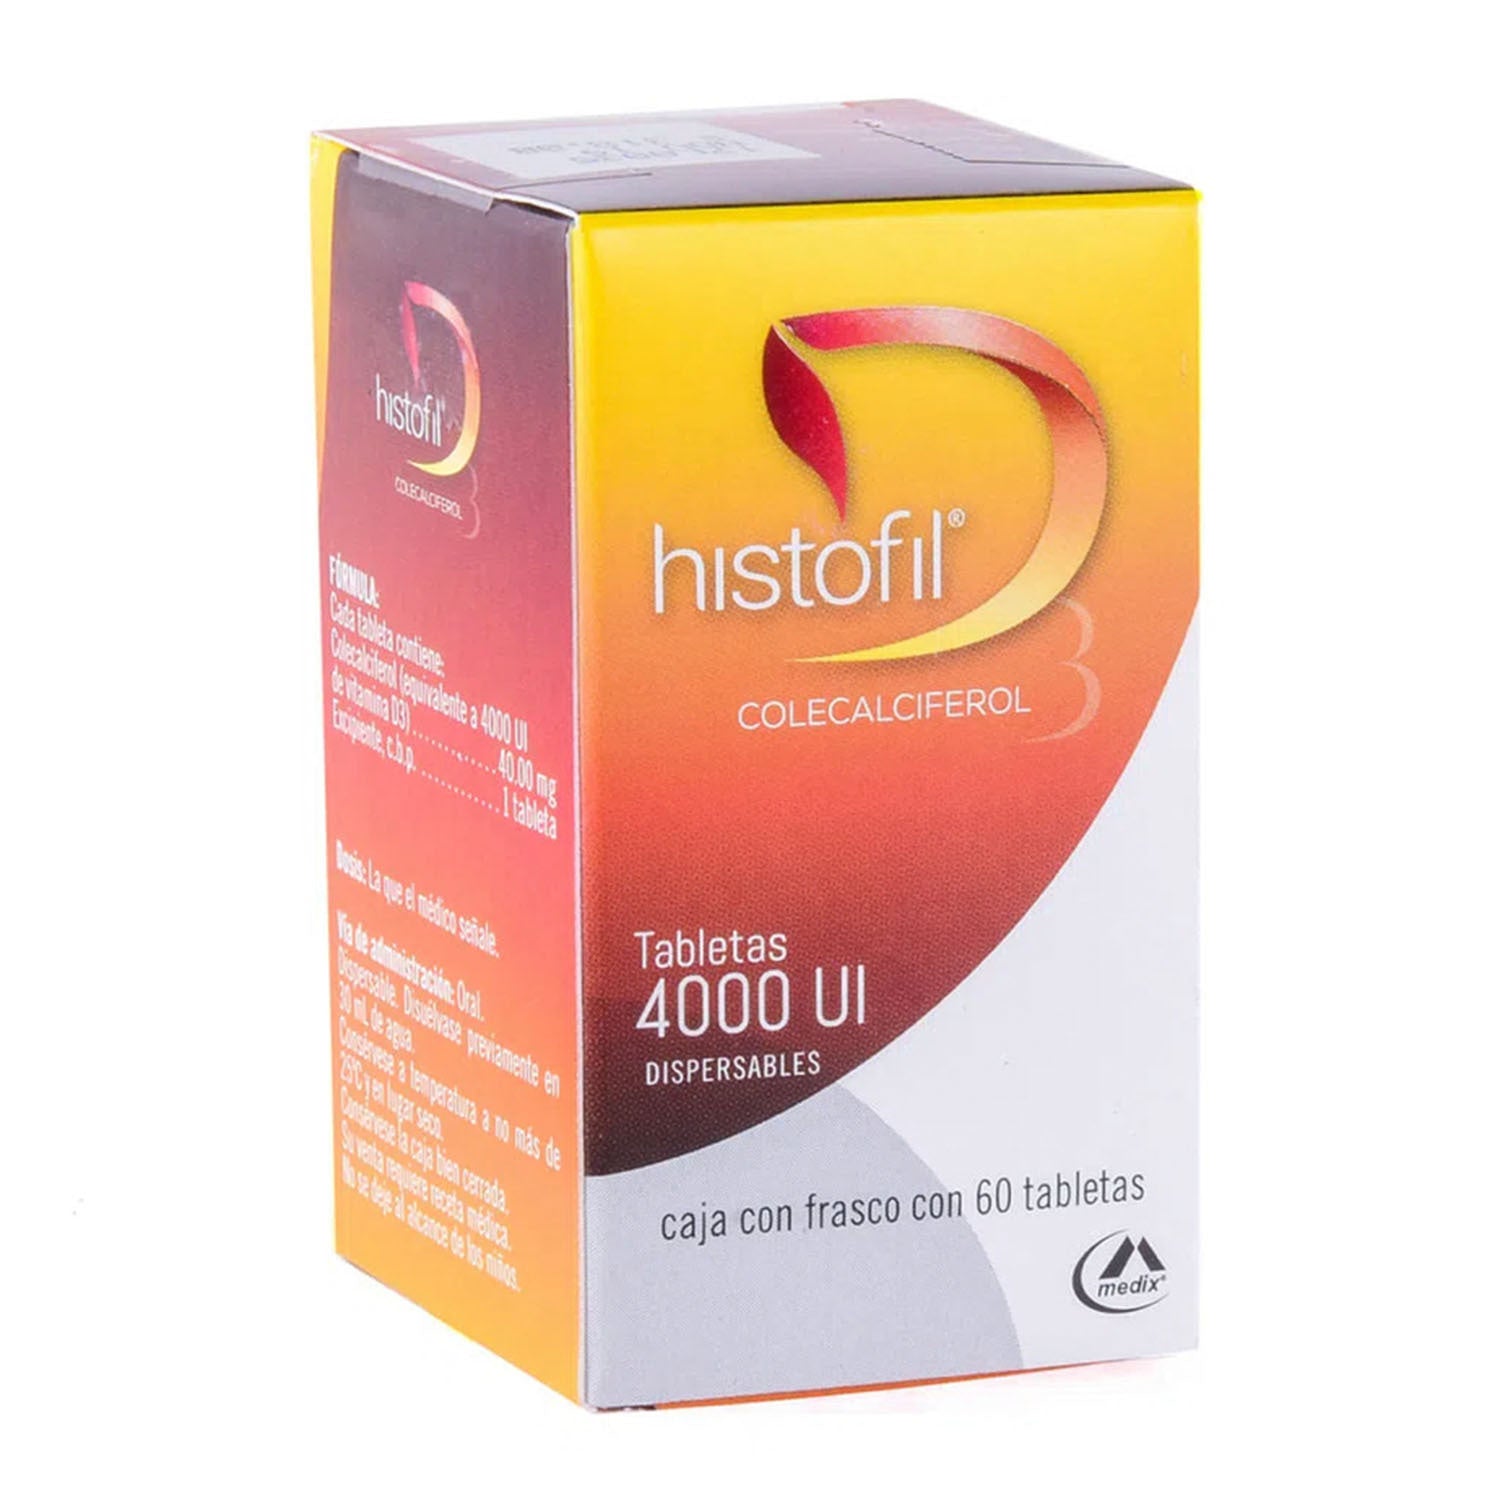 Colecalciferol (vitamina D3), marca Histofil®, tabletas 4000 Ul dispersables, 60 tabletas